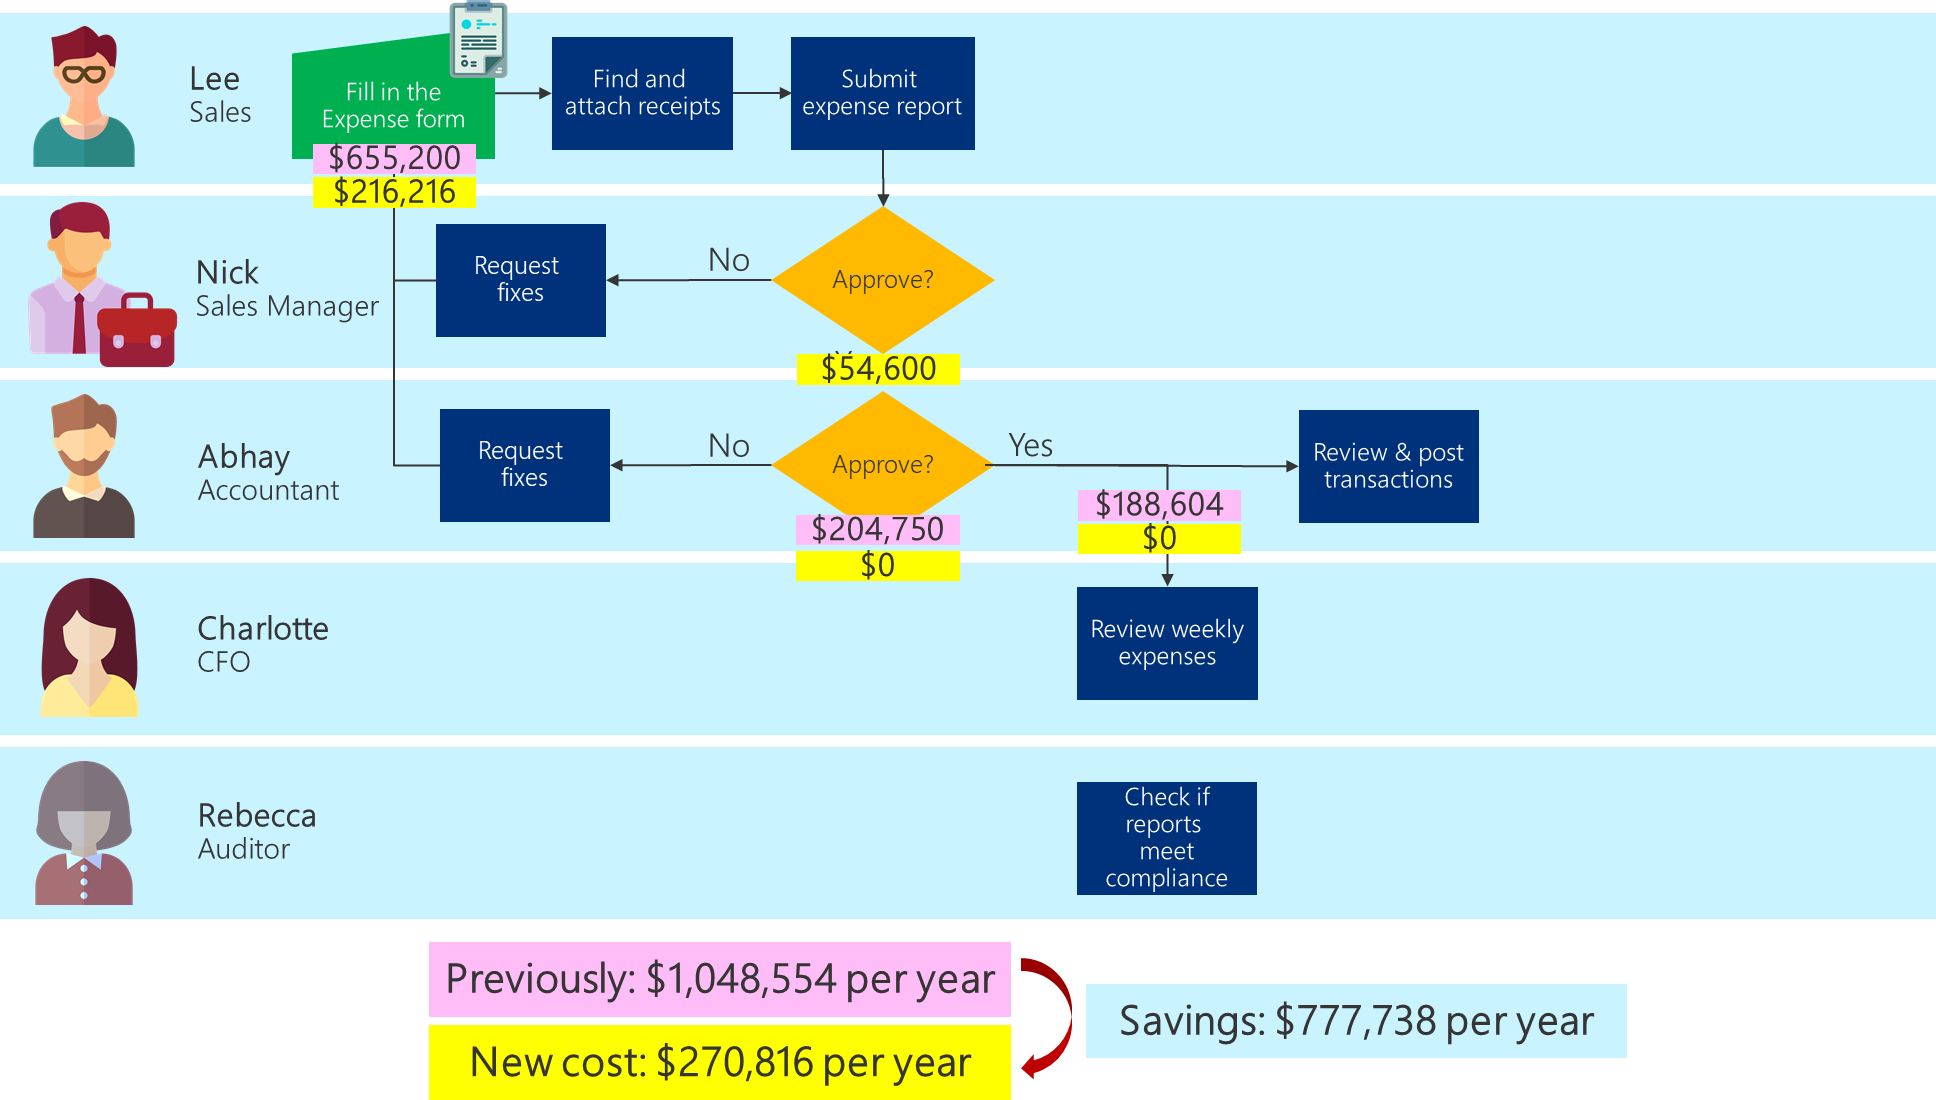 Geschäftsprozess-Flussdiagramm mit den aktualisierten Kosten für den optimierten Prozess und den insgesamt zu erzielenden Einsparungen